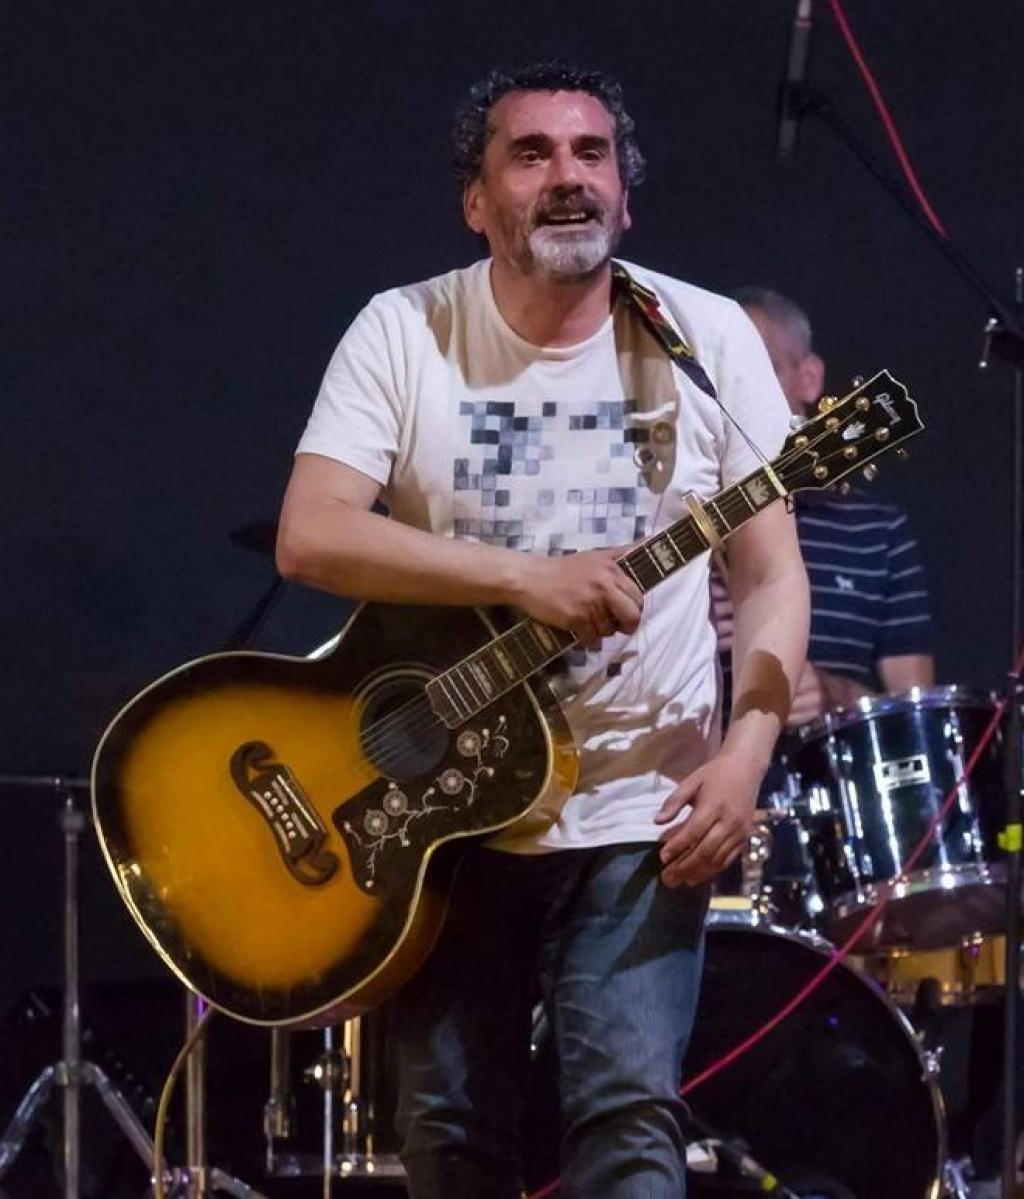 El Tapin - El músico Fran Elías Granda recibirá el galardón Pueblo de Lugones